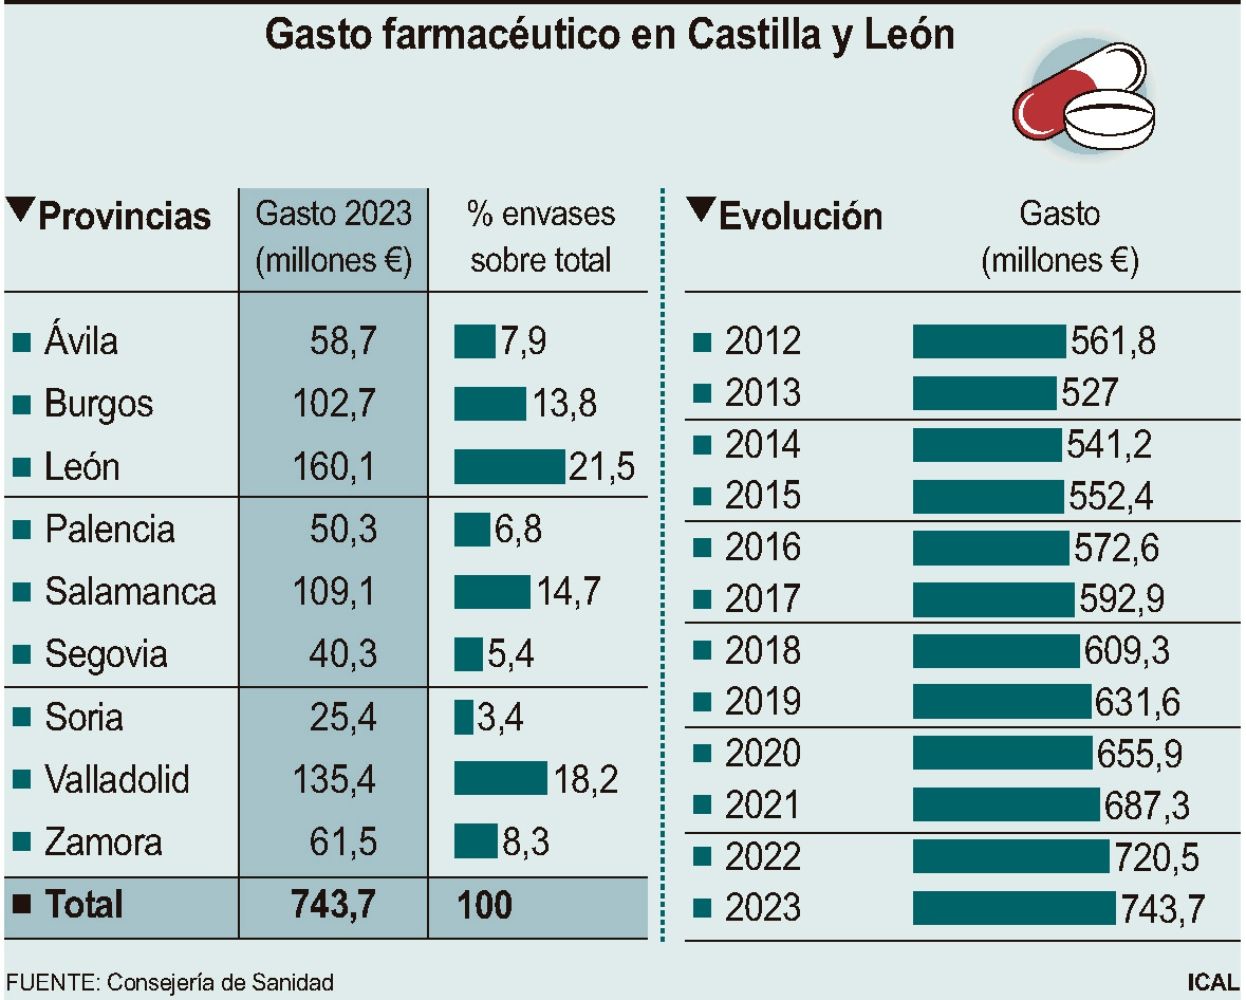 Grafica datos gasto farmacéutico en Castilla y León